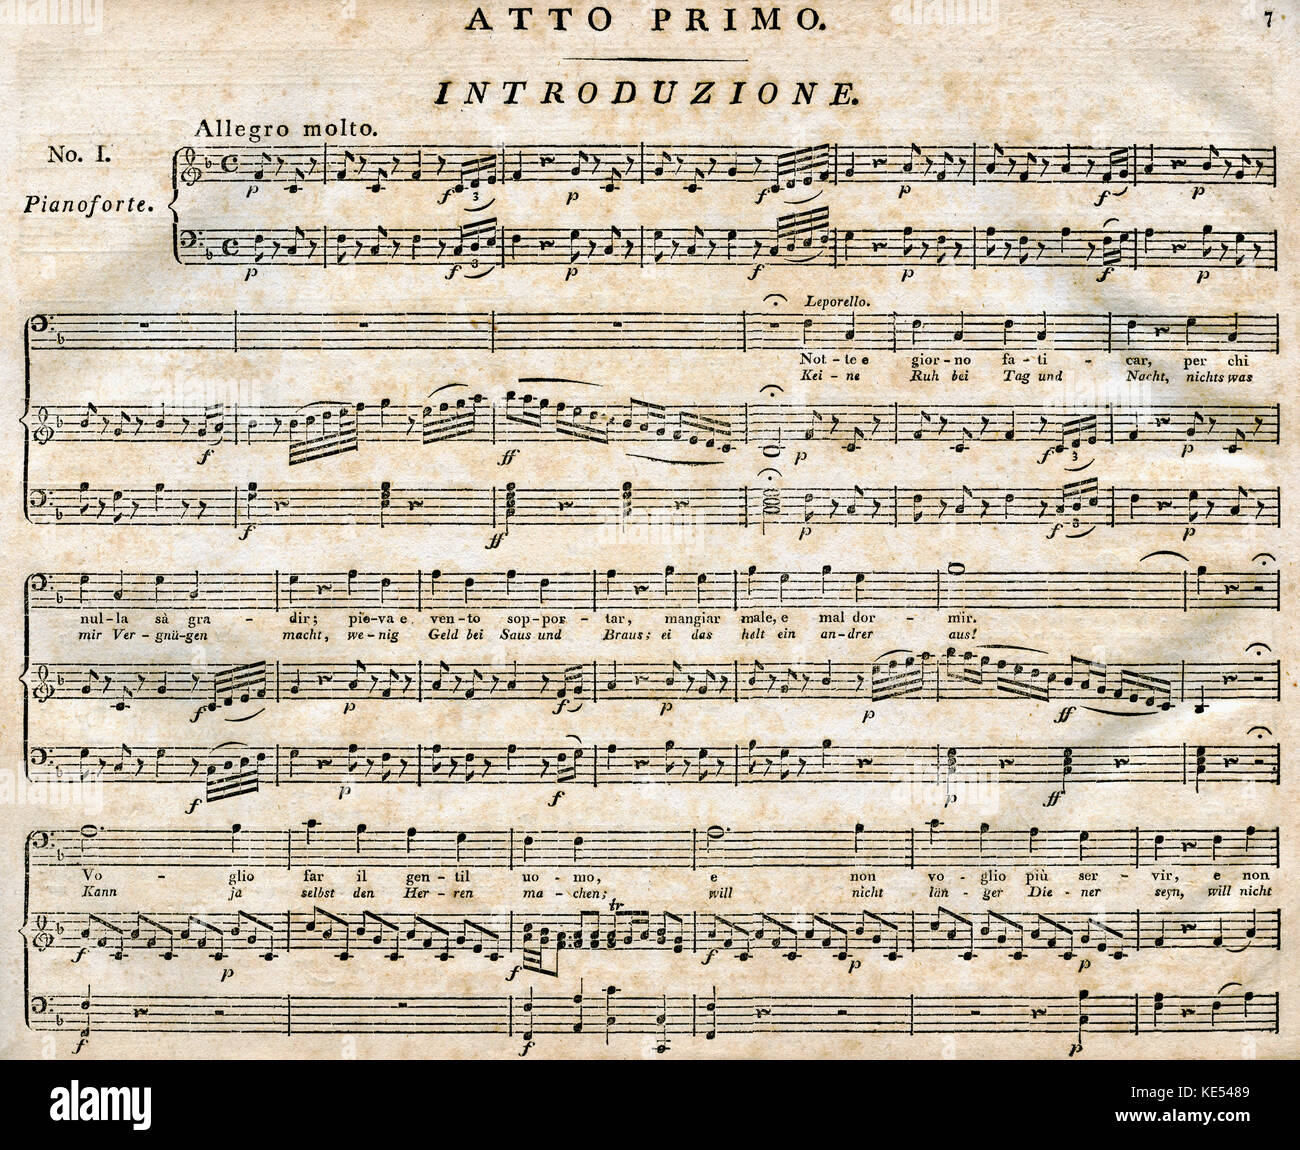 Don Giovanni Don Giovanni - Primer Acto, Atto Primo. Introducción. Por Wolfgang Amadeus Mozart. Publicado por Breitkopf y Härtel, Leipzig. Compositor austríaco, el 27 de enero de 1756 - 5 de diciembre de 1791. Foto de stock